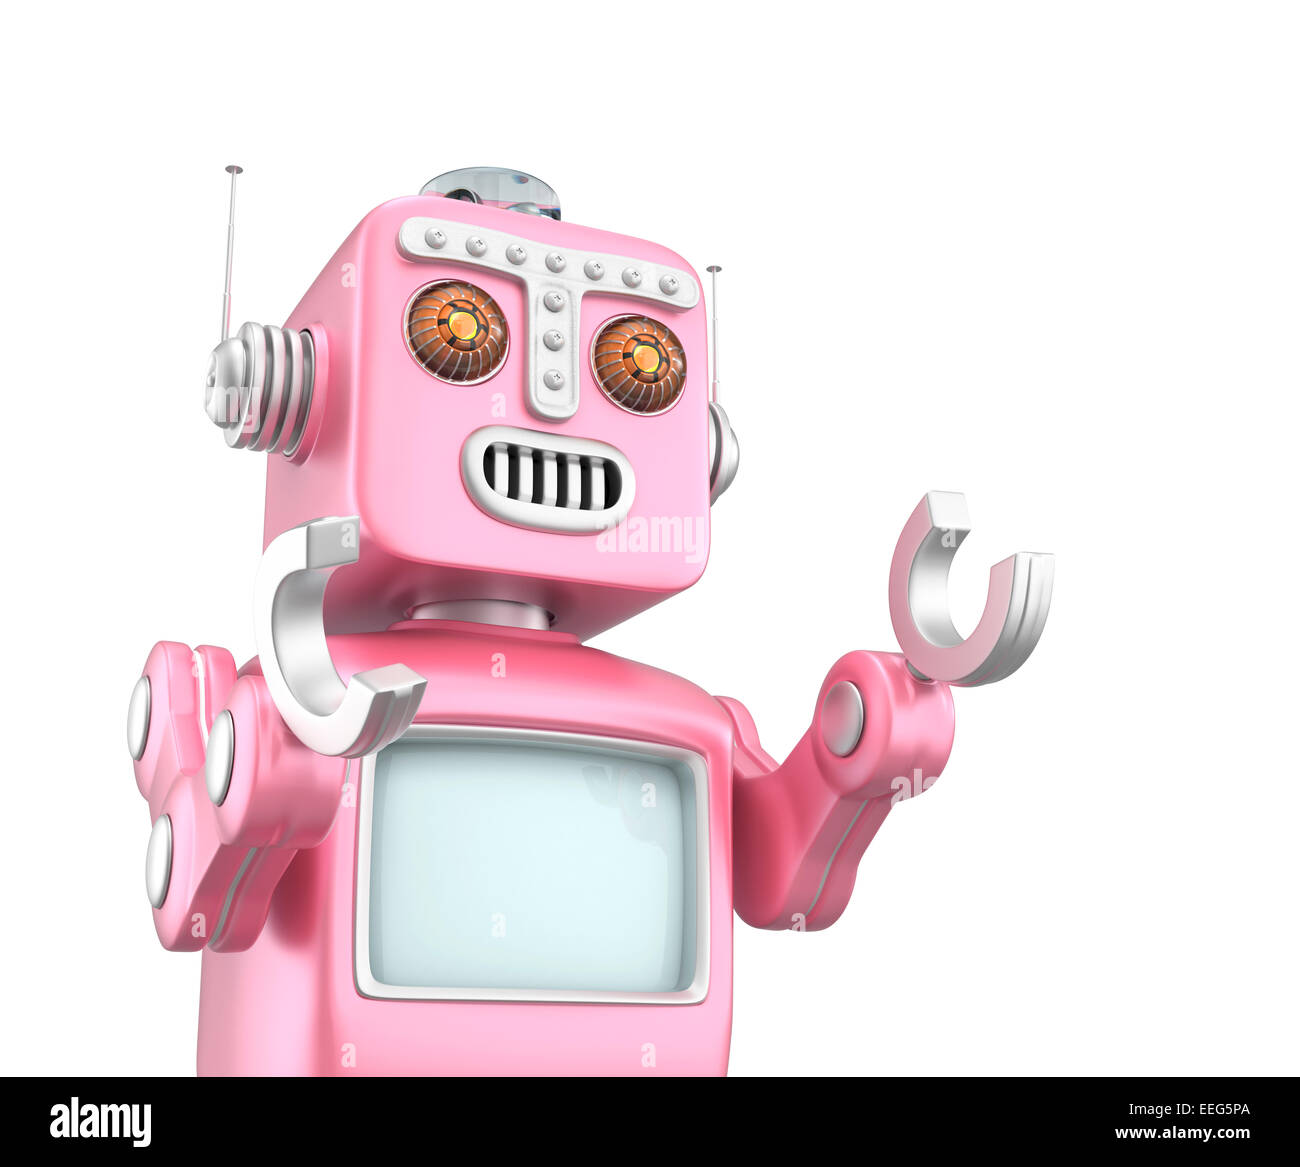 Retro vintage robot raising hands and looks happy Stock Photo